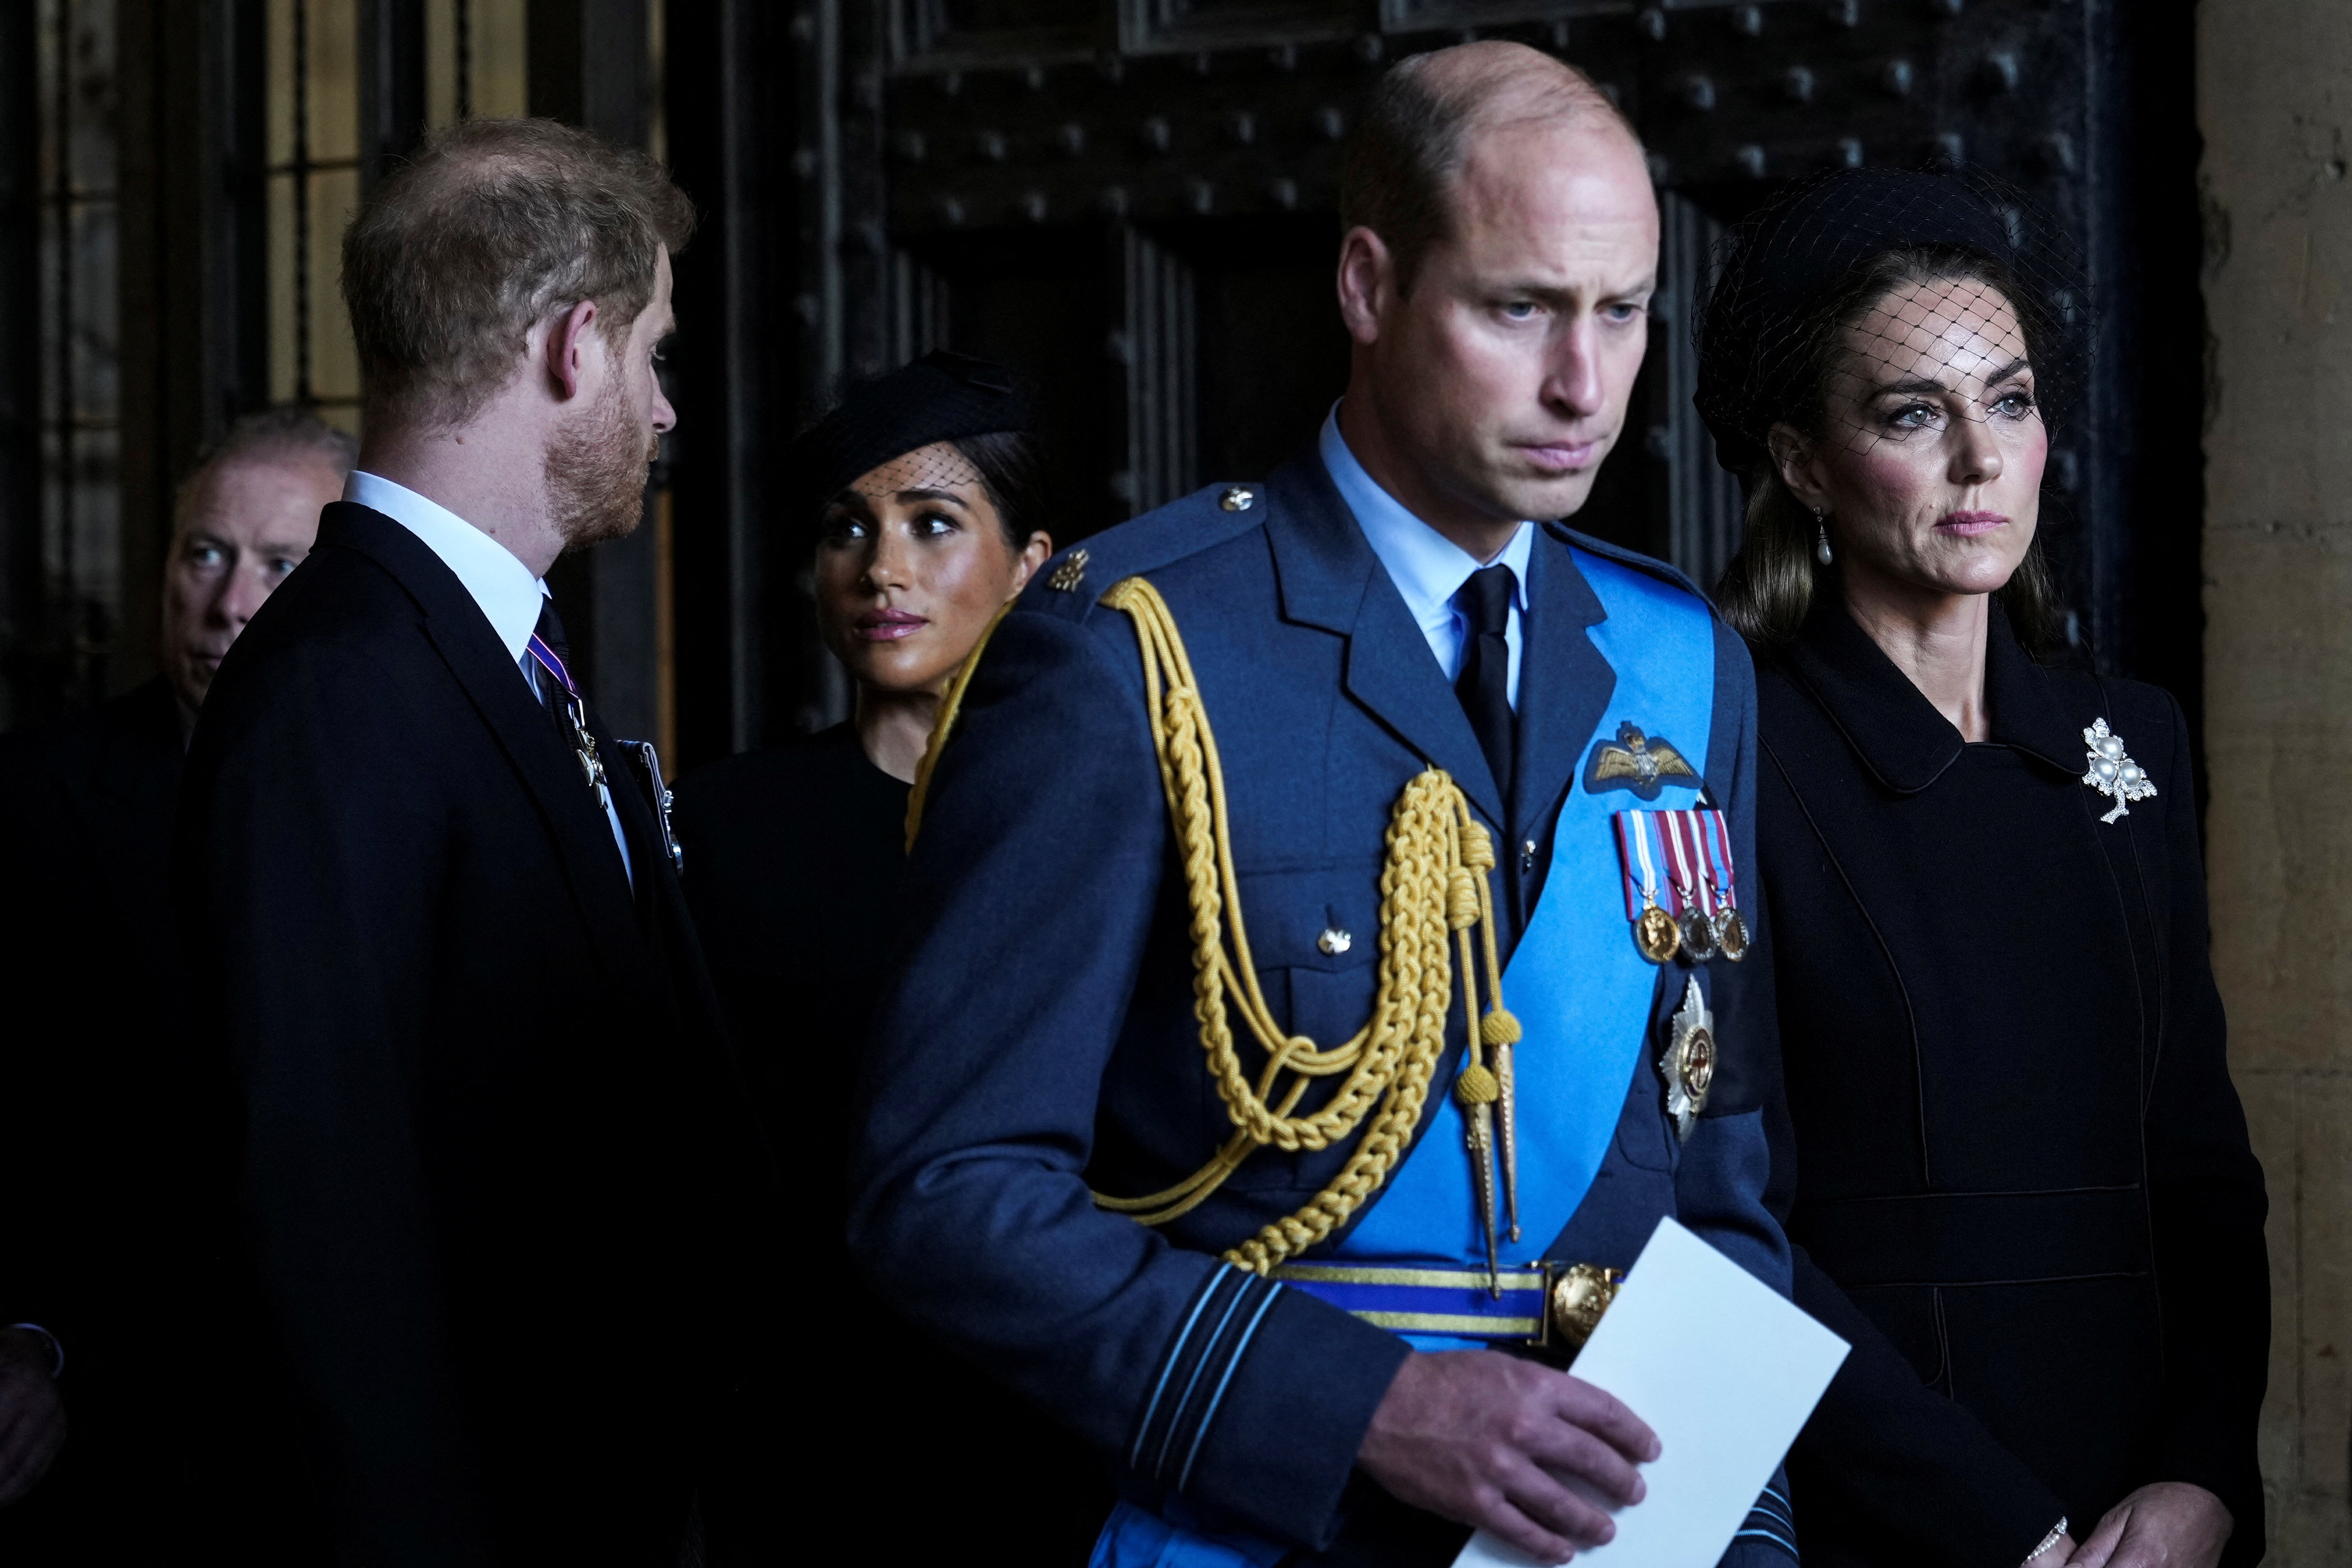 El príncipe William, segundo a la derecha, Kate, princesa de Gales, a la derecha, el príncipe Harry, a la izquierda, y Meghan, duquesa de Sussex, segunda a la izquierda, se van después de presentar sus respetos a la reina Isabel II en Westminster Hall, en Londres, miércoles 14 de septiembre de 2022 (Reuters)